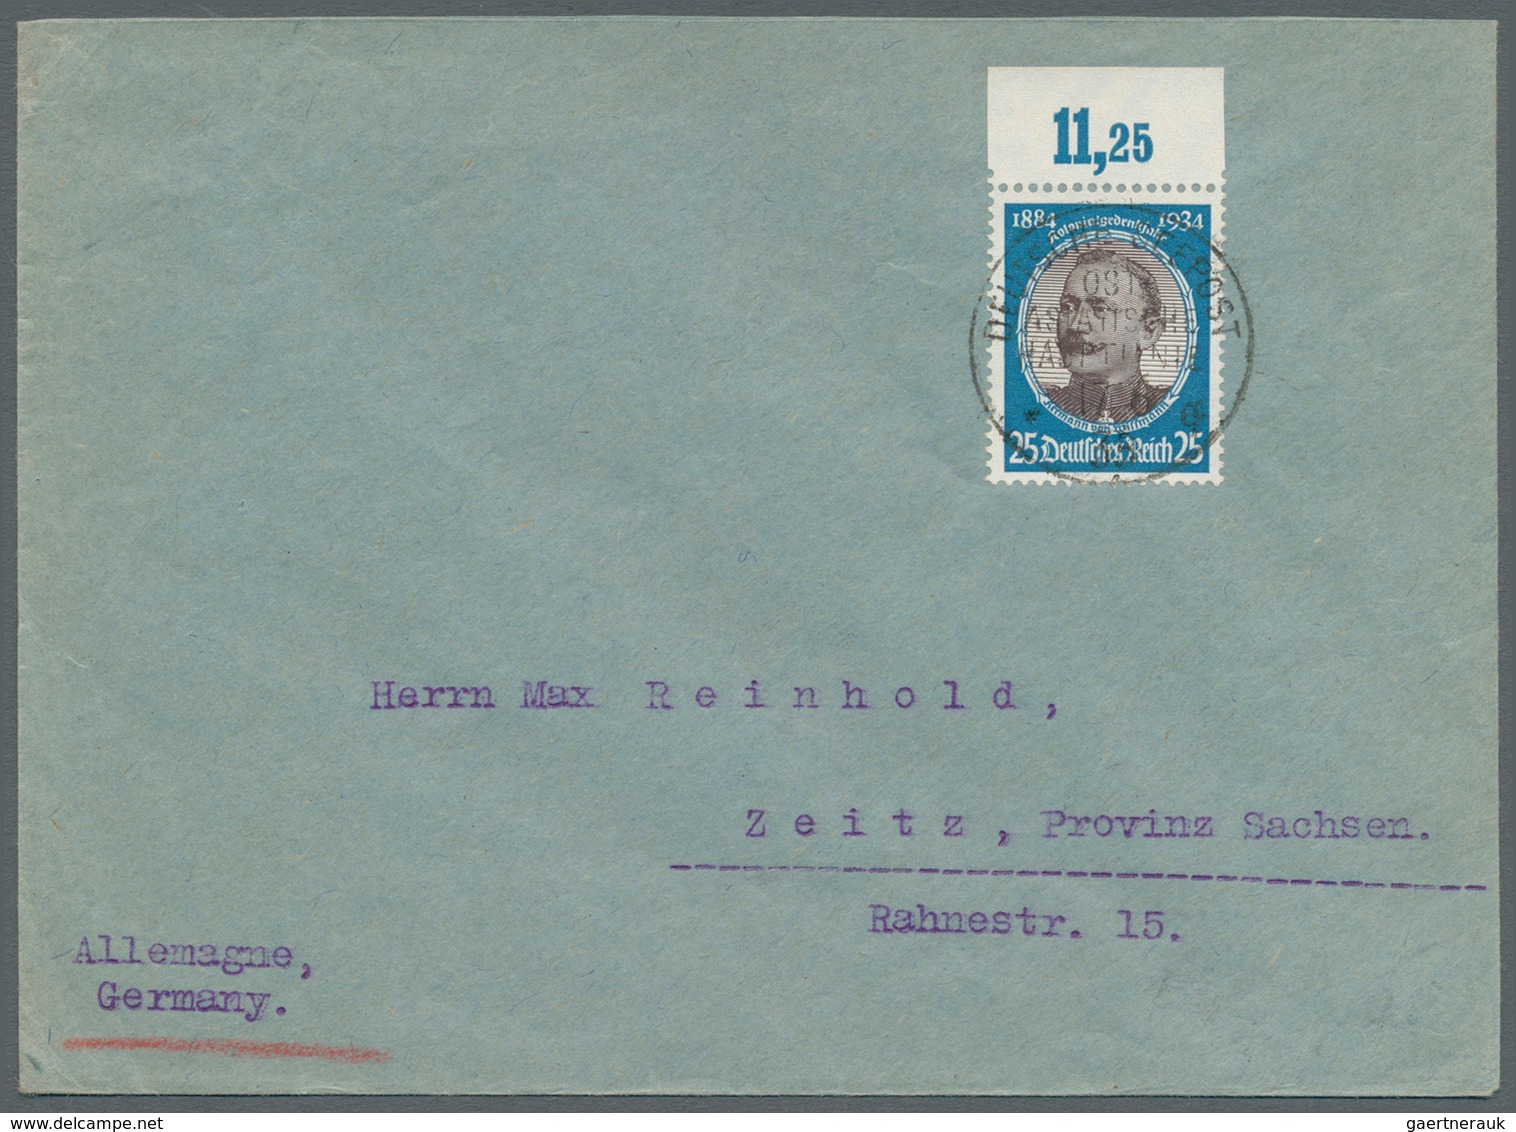 Schiffspost Deutschland: 1900/1939, kleine Sammlung mit ca. 50 Briefen und Karten inkl. einiger unge